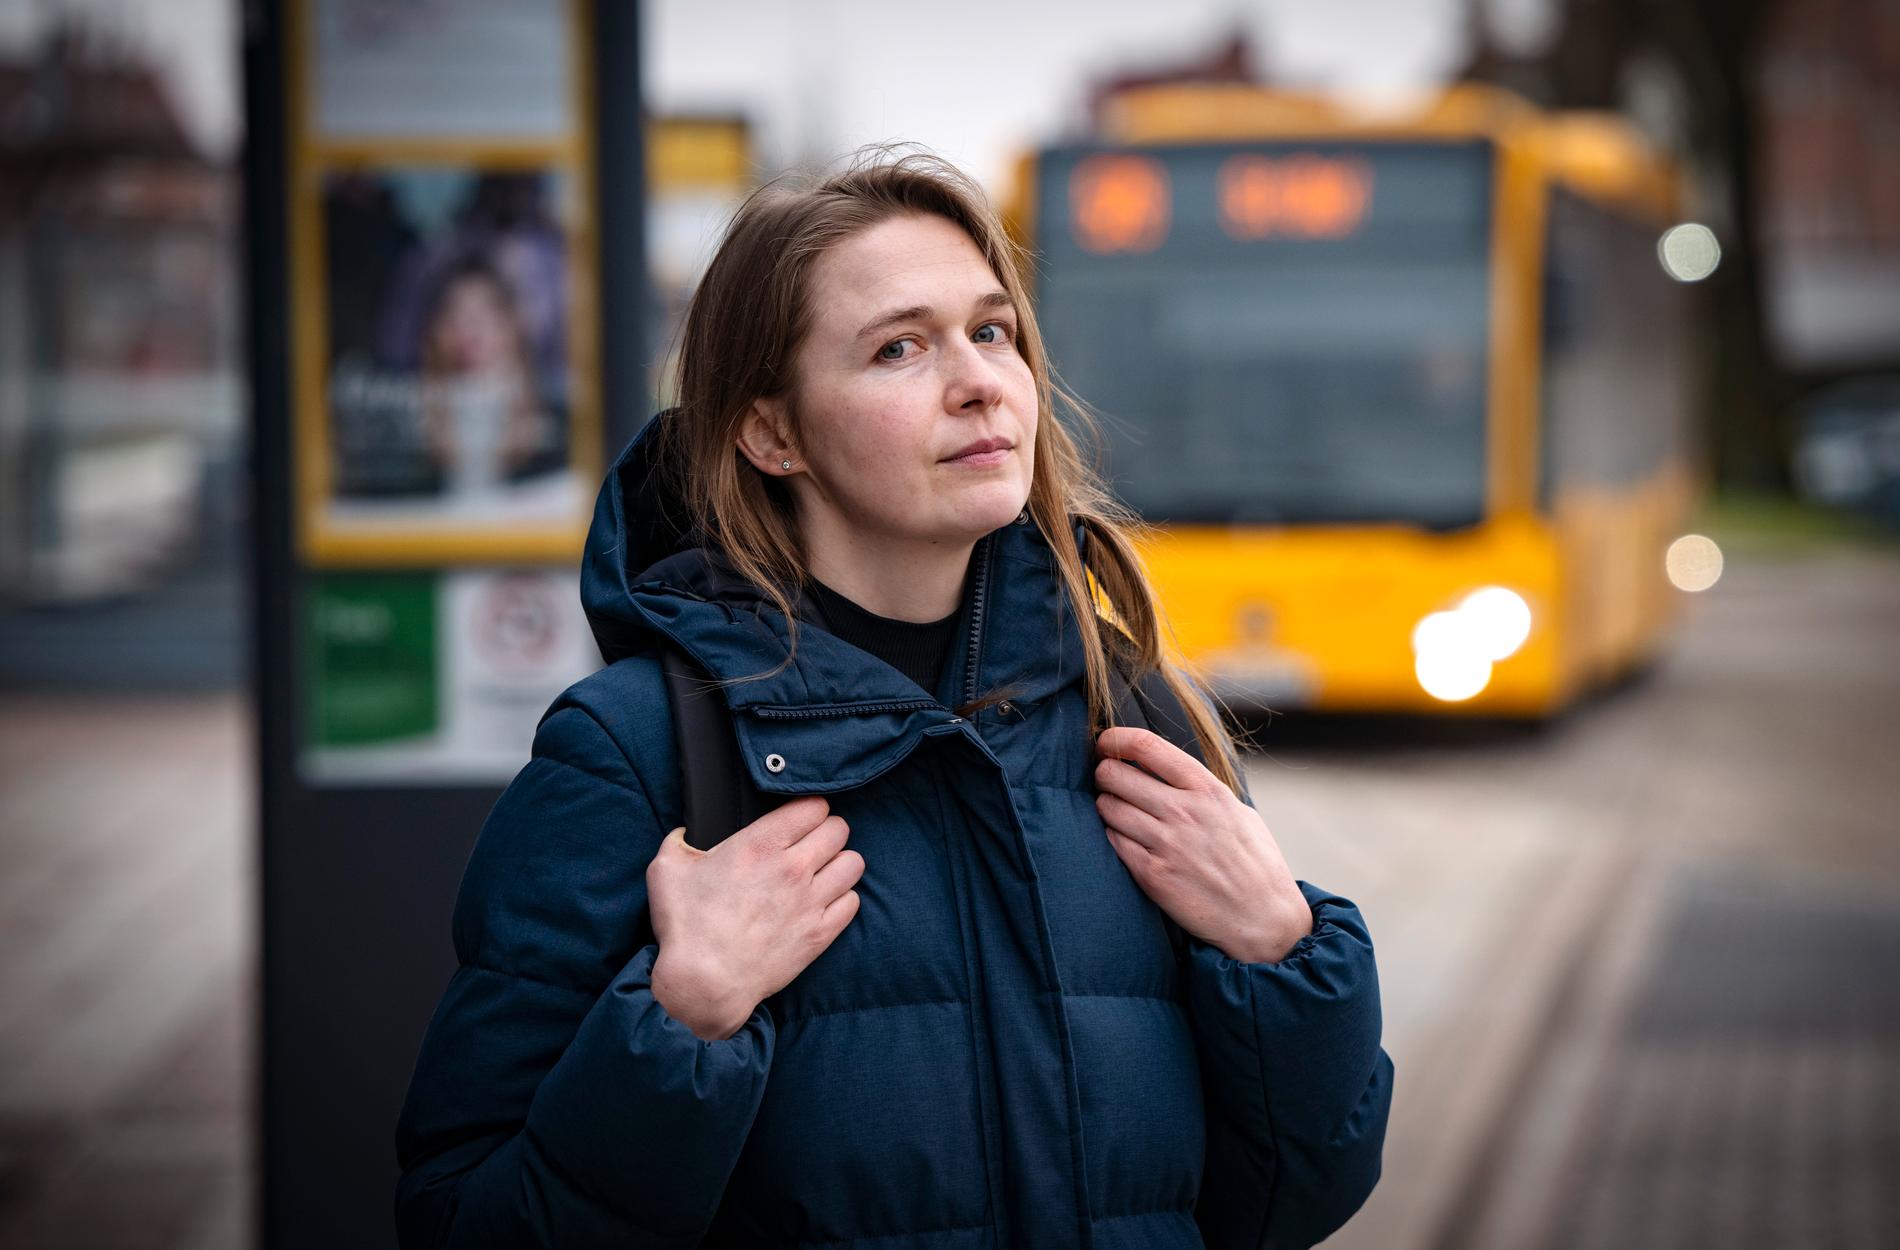 Skoldagen är slut. Mariia Zakharenko väntar på bussen mot Kivik vid buss- och tågstationen i Tomelilla.